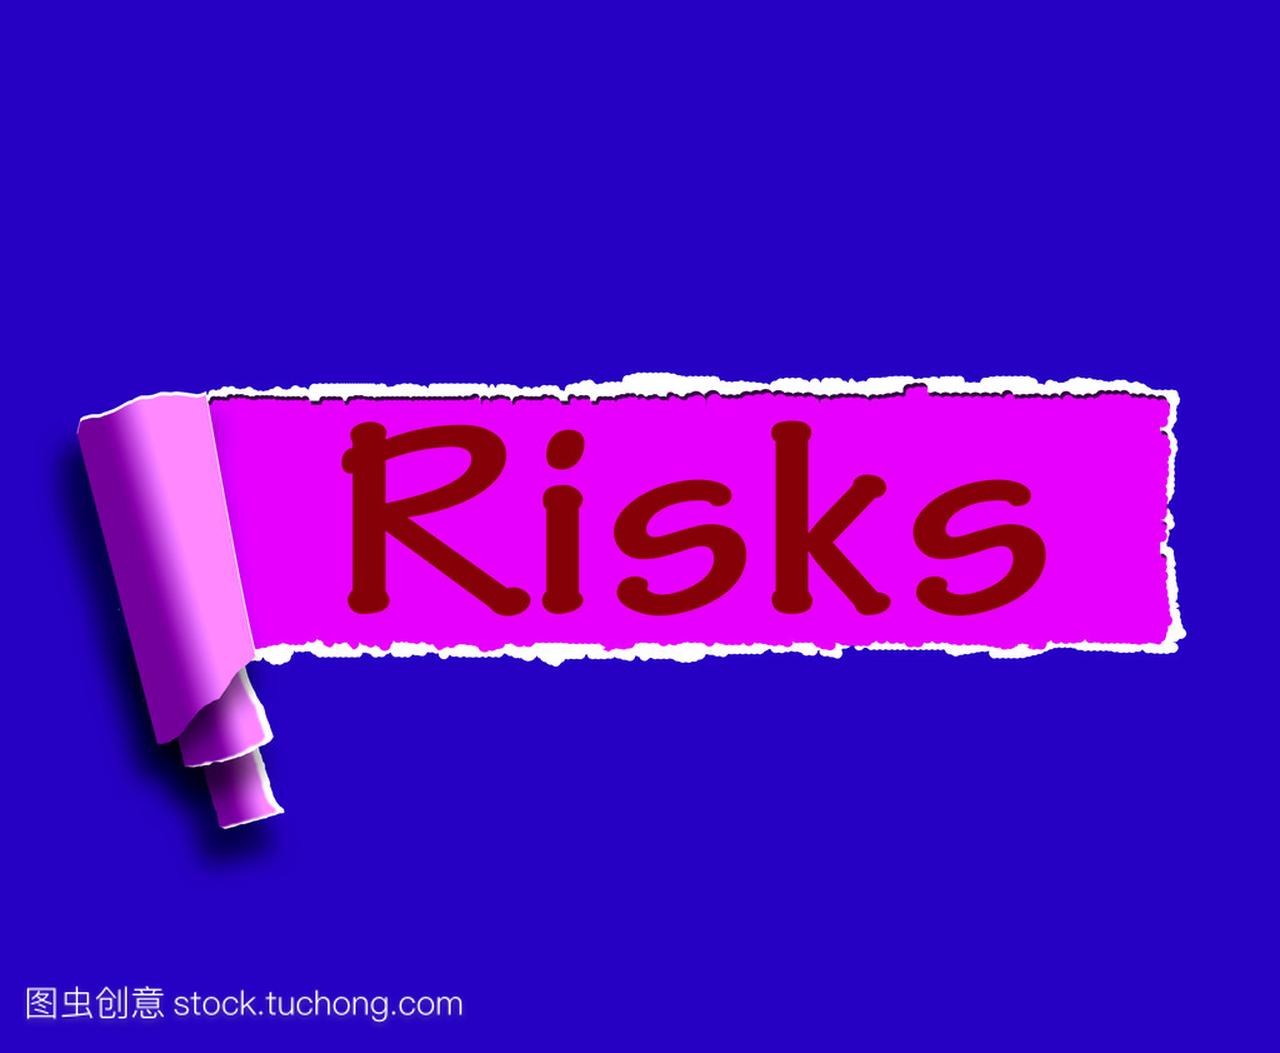 风险一词是指投资在线的利润和损失